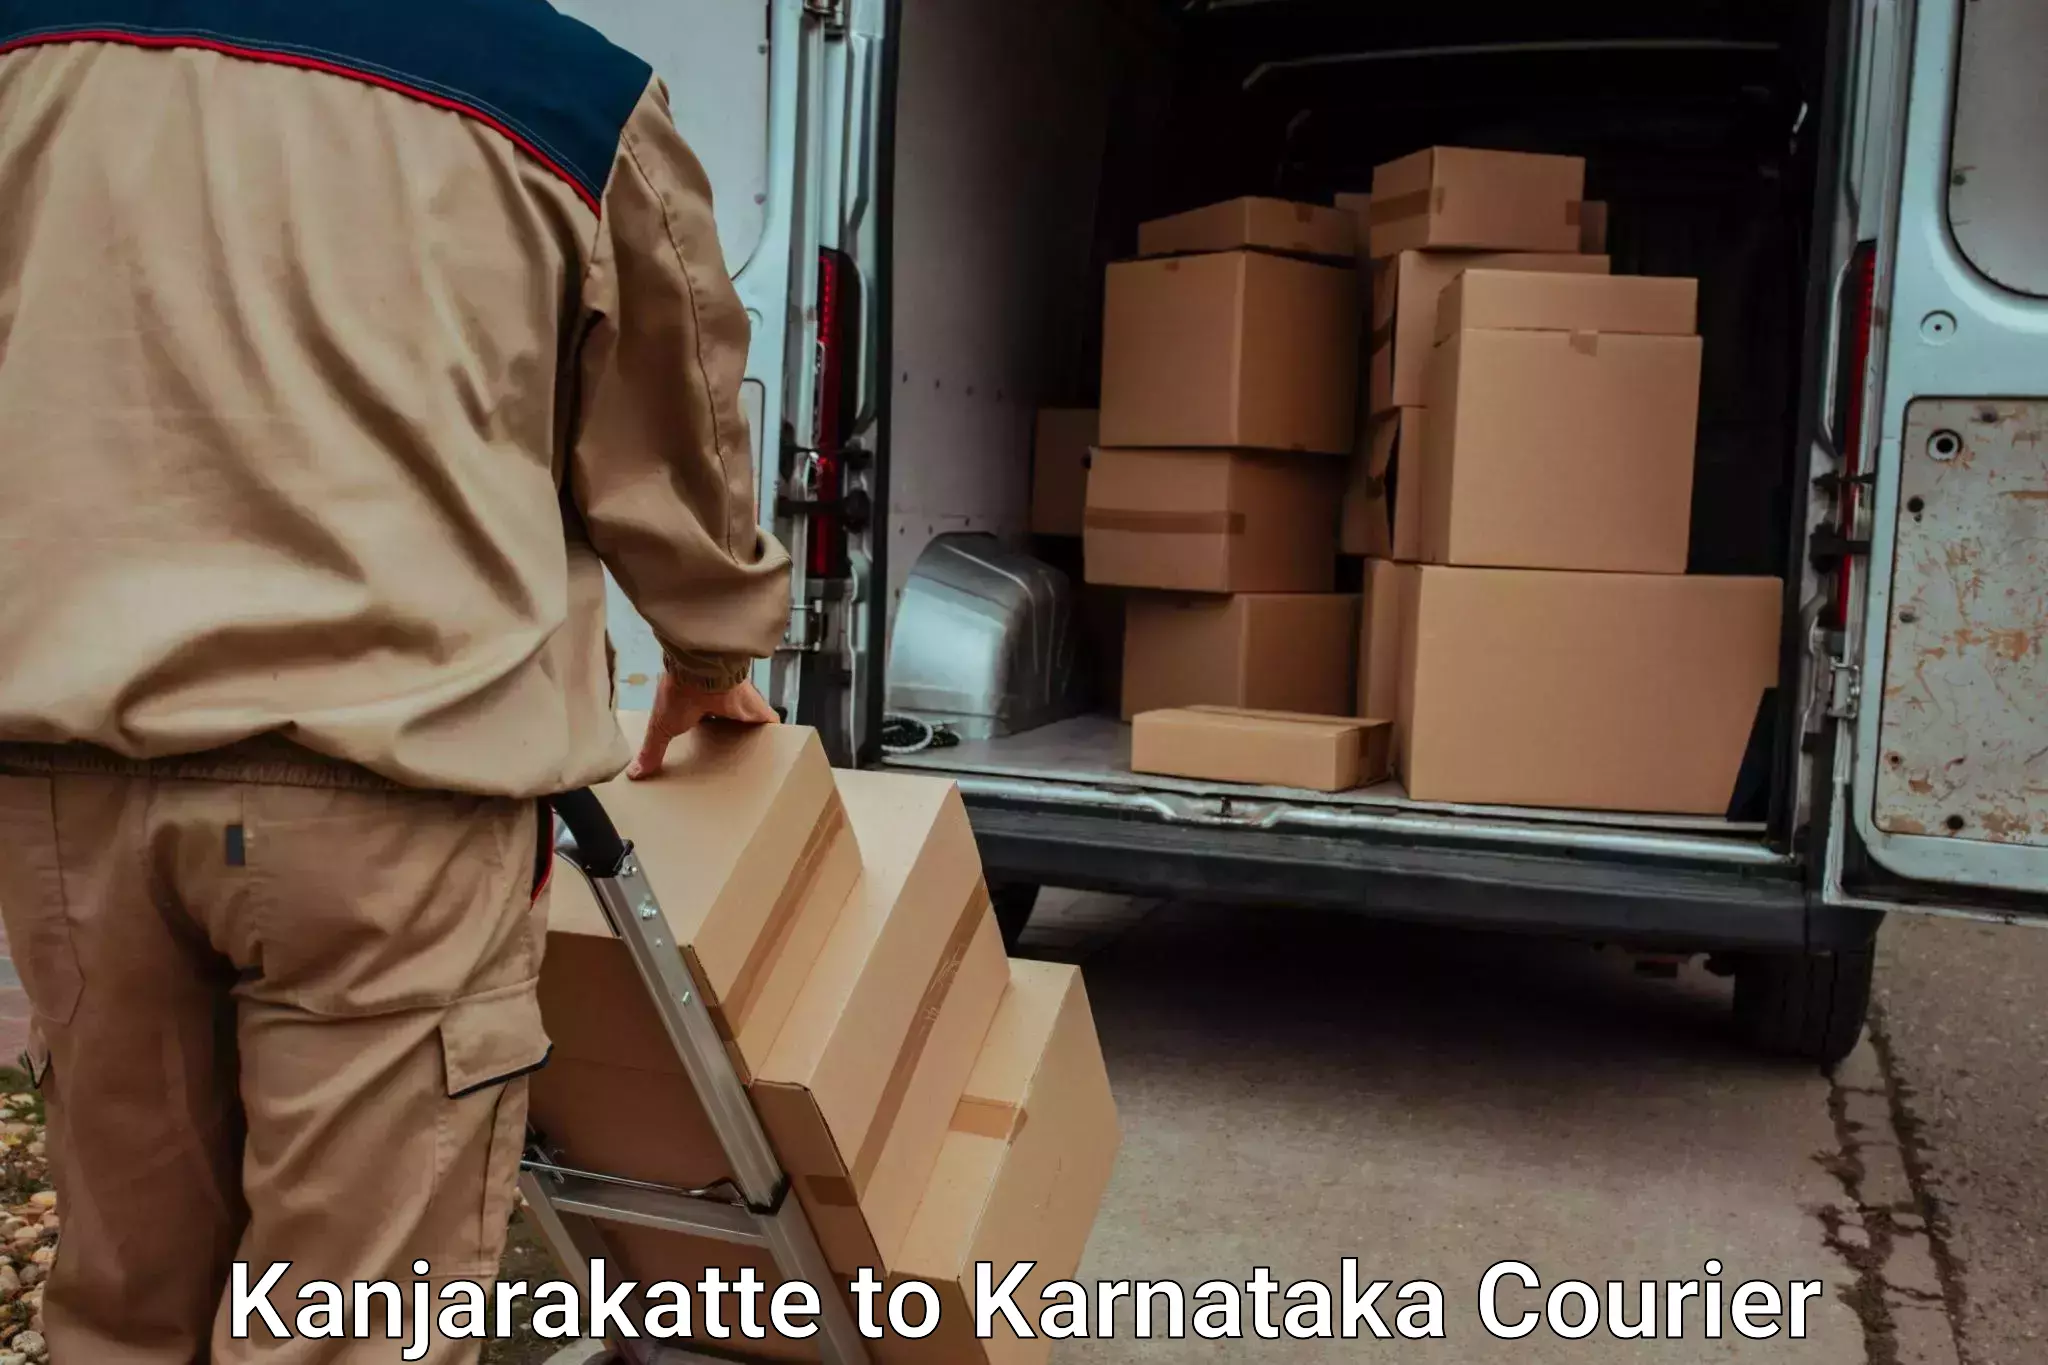 High-quality baggage shipment in Kanjarakatte to Mangalore Port